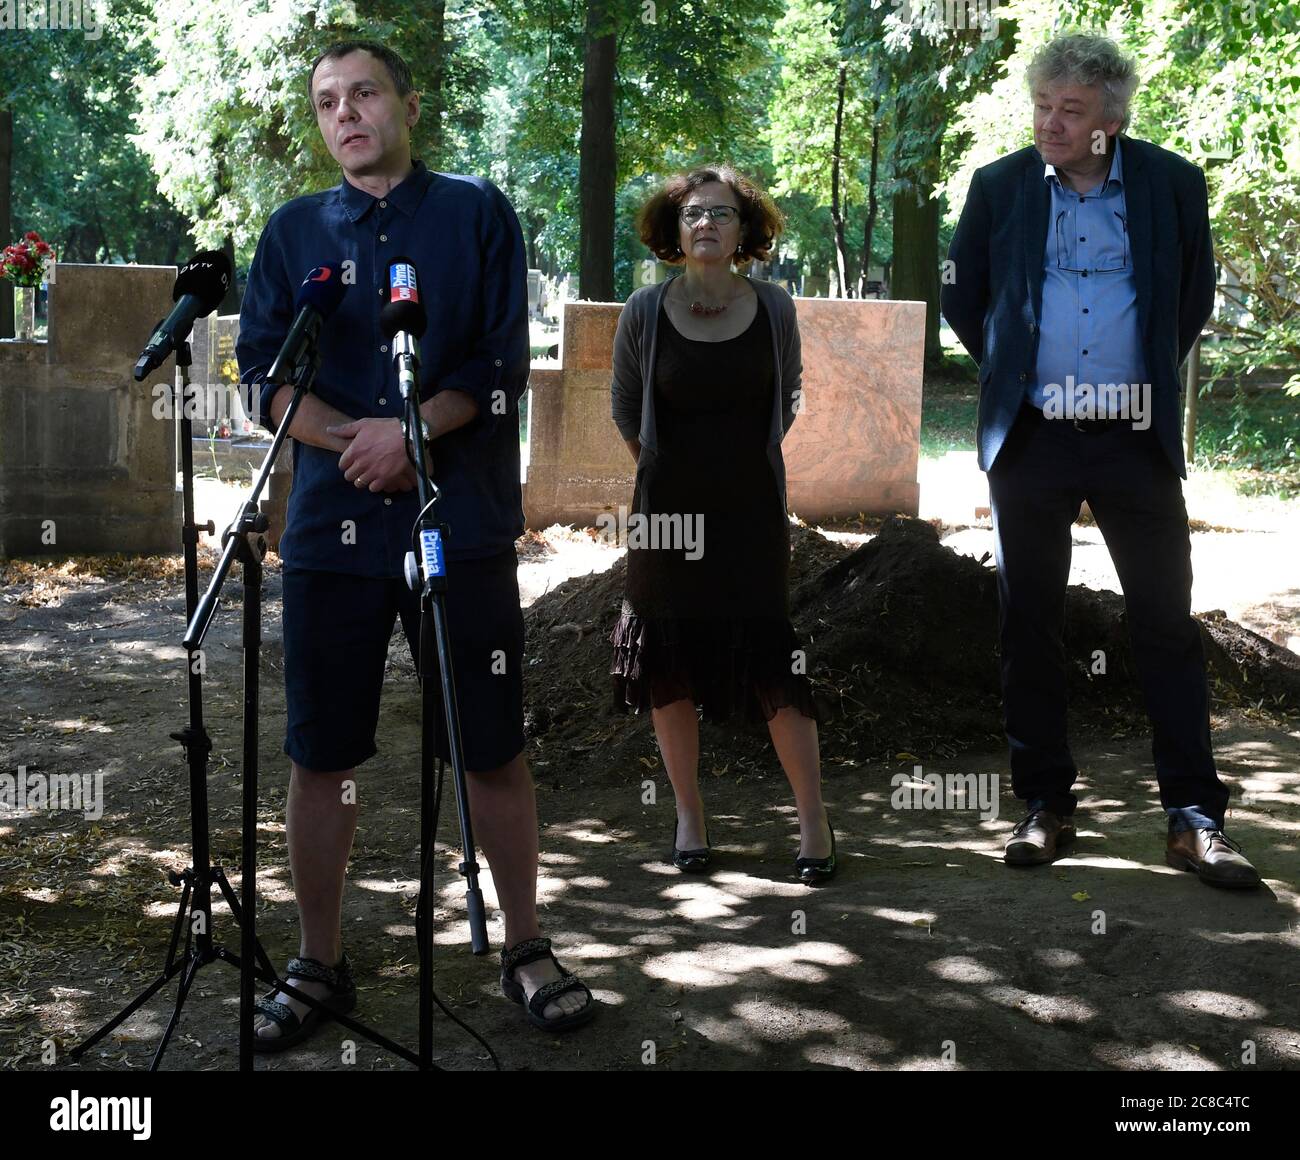 Archäologen haben mit einer Probe ein Massengrab antikommunistischer politischer Gefangener auf dem Prager Friedhof von Dablice untersucht, um den genauen Ort herauszufinden, an dem der Leichnam des antinazistischen und antikommunistischen Kämpfers Zdena Masinova SR begraben ist, Jan Havrda (von links), Die Prager Ratsmitglied Milena Johnova und der Antipologe Petr Veleminsky haben heute, am Donnerstag, dem 23. Juli 2020, auf einer Pressekonferenz davon berichtet. Ihre Leibesreste werden nicht gefunden. Im März stimmte Prag mit Zdena Masinova Jr. überein, dass der Körper ihrer Mutter exhumiert werden würde. Masinova SR (1907-1956) war die Frau eines Helden der Anti-Nazi-Bewegung Stockfoto